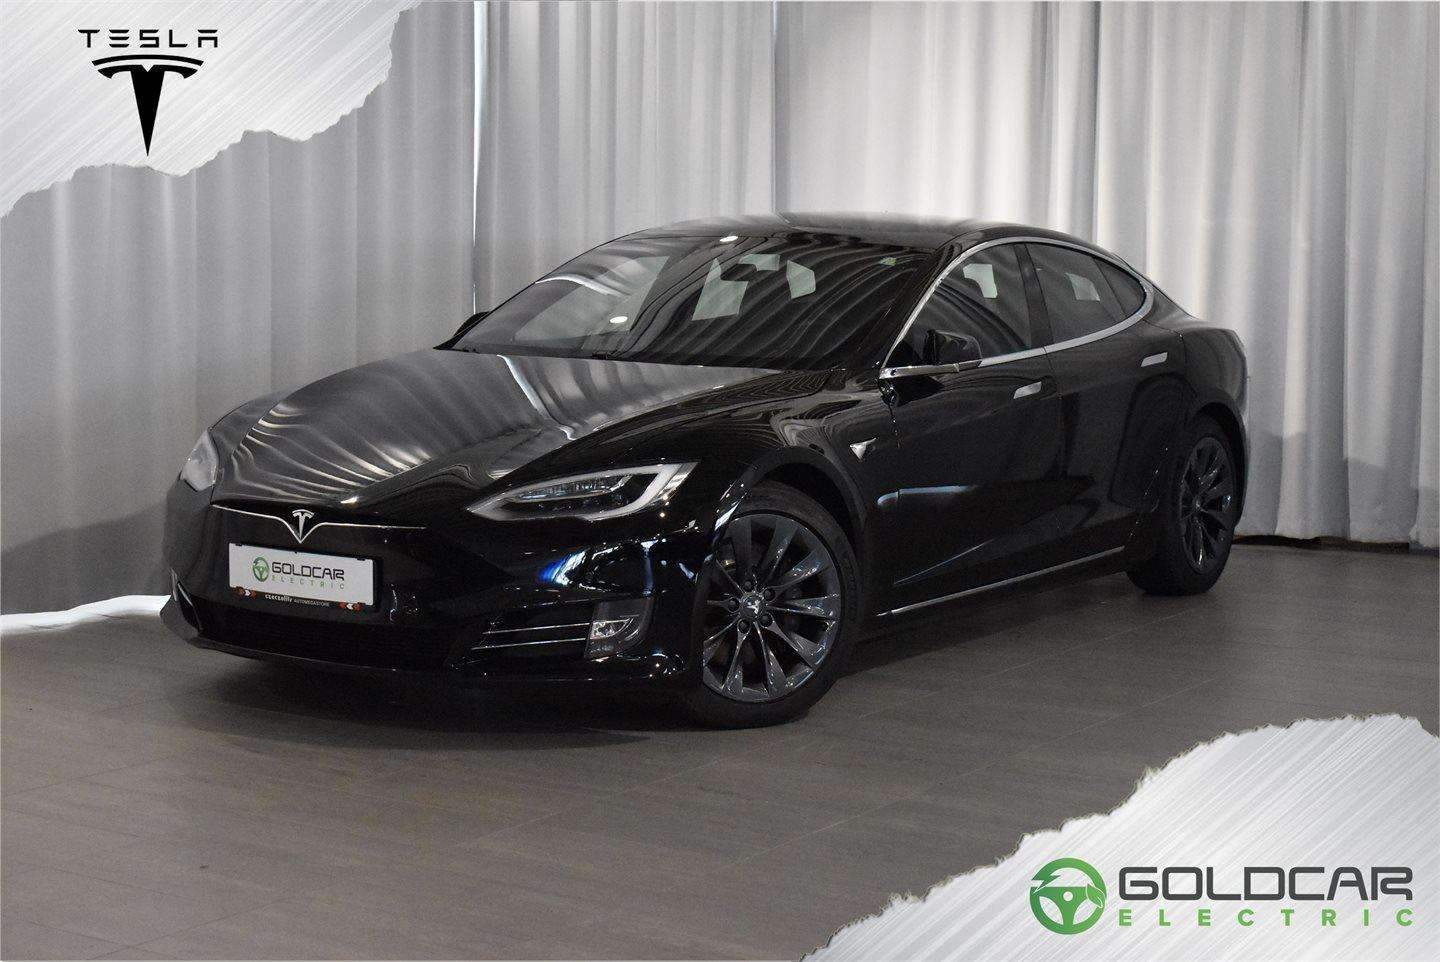 Tesla Model S Sedan in Black used in Wiener Neustadt for € 79,900.-